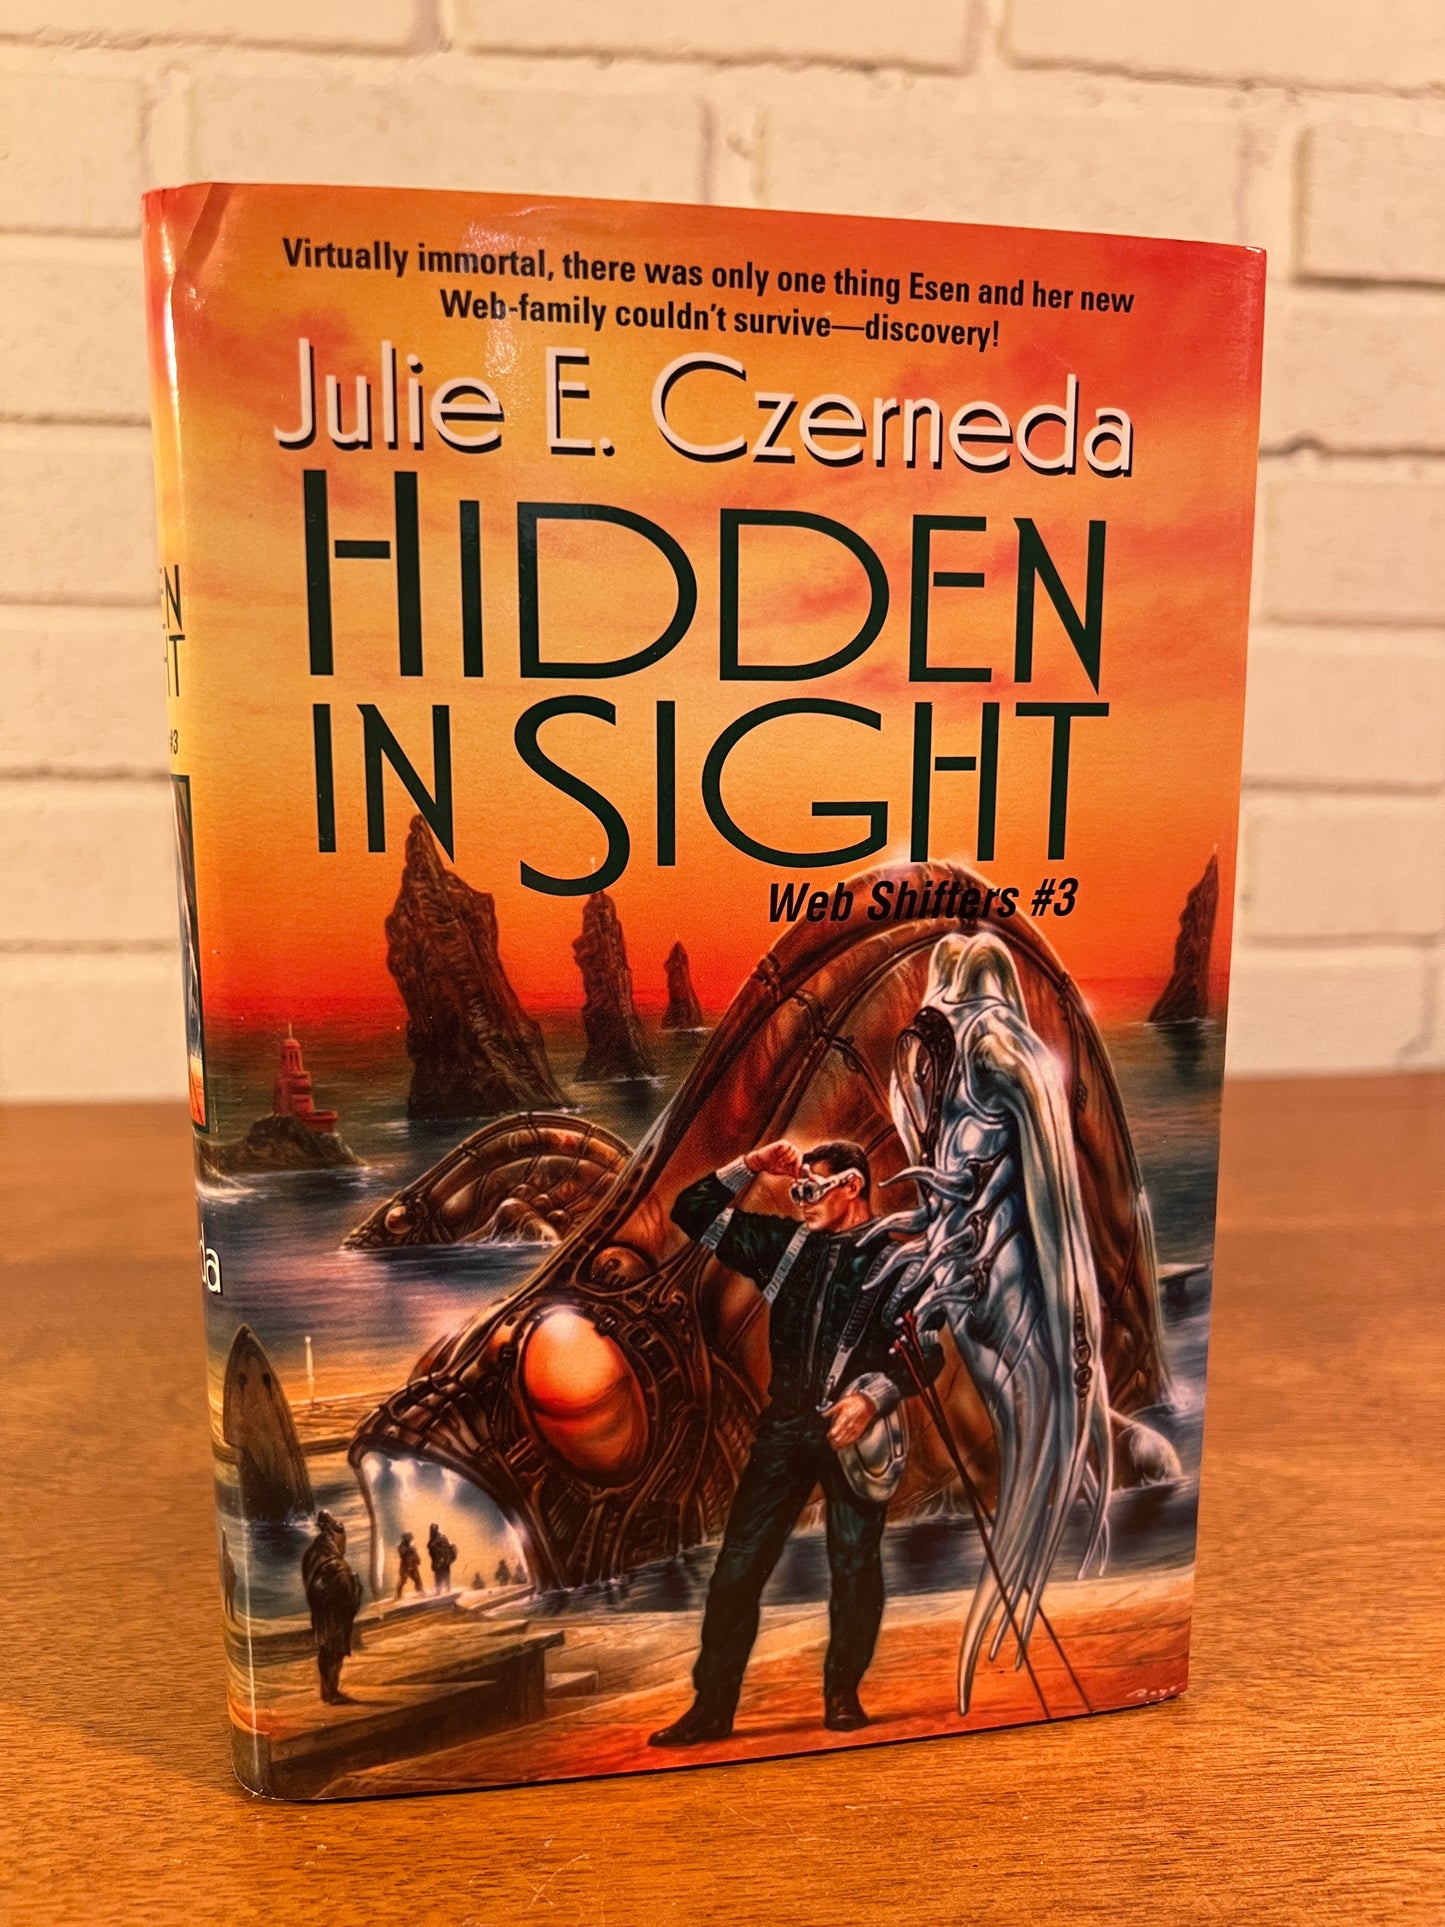 Hidden in Sight Web Shifters #3 by Julie E. Czerneda